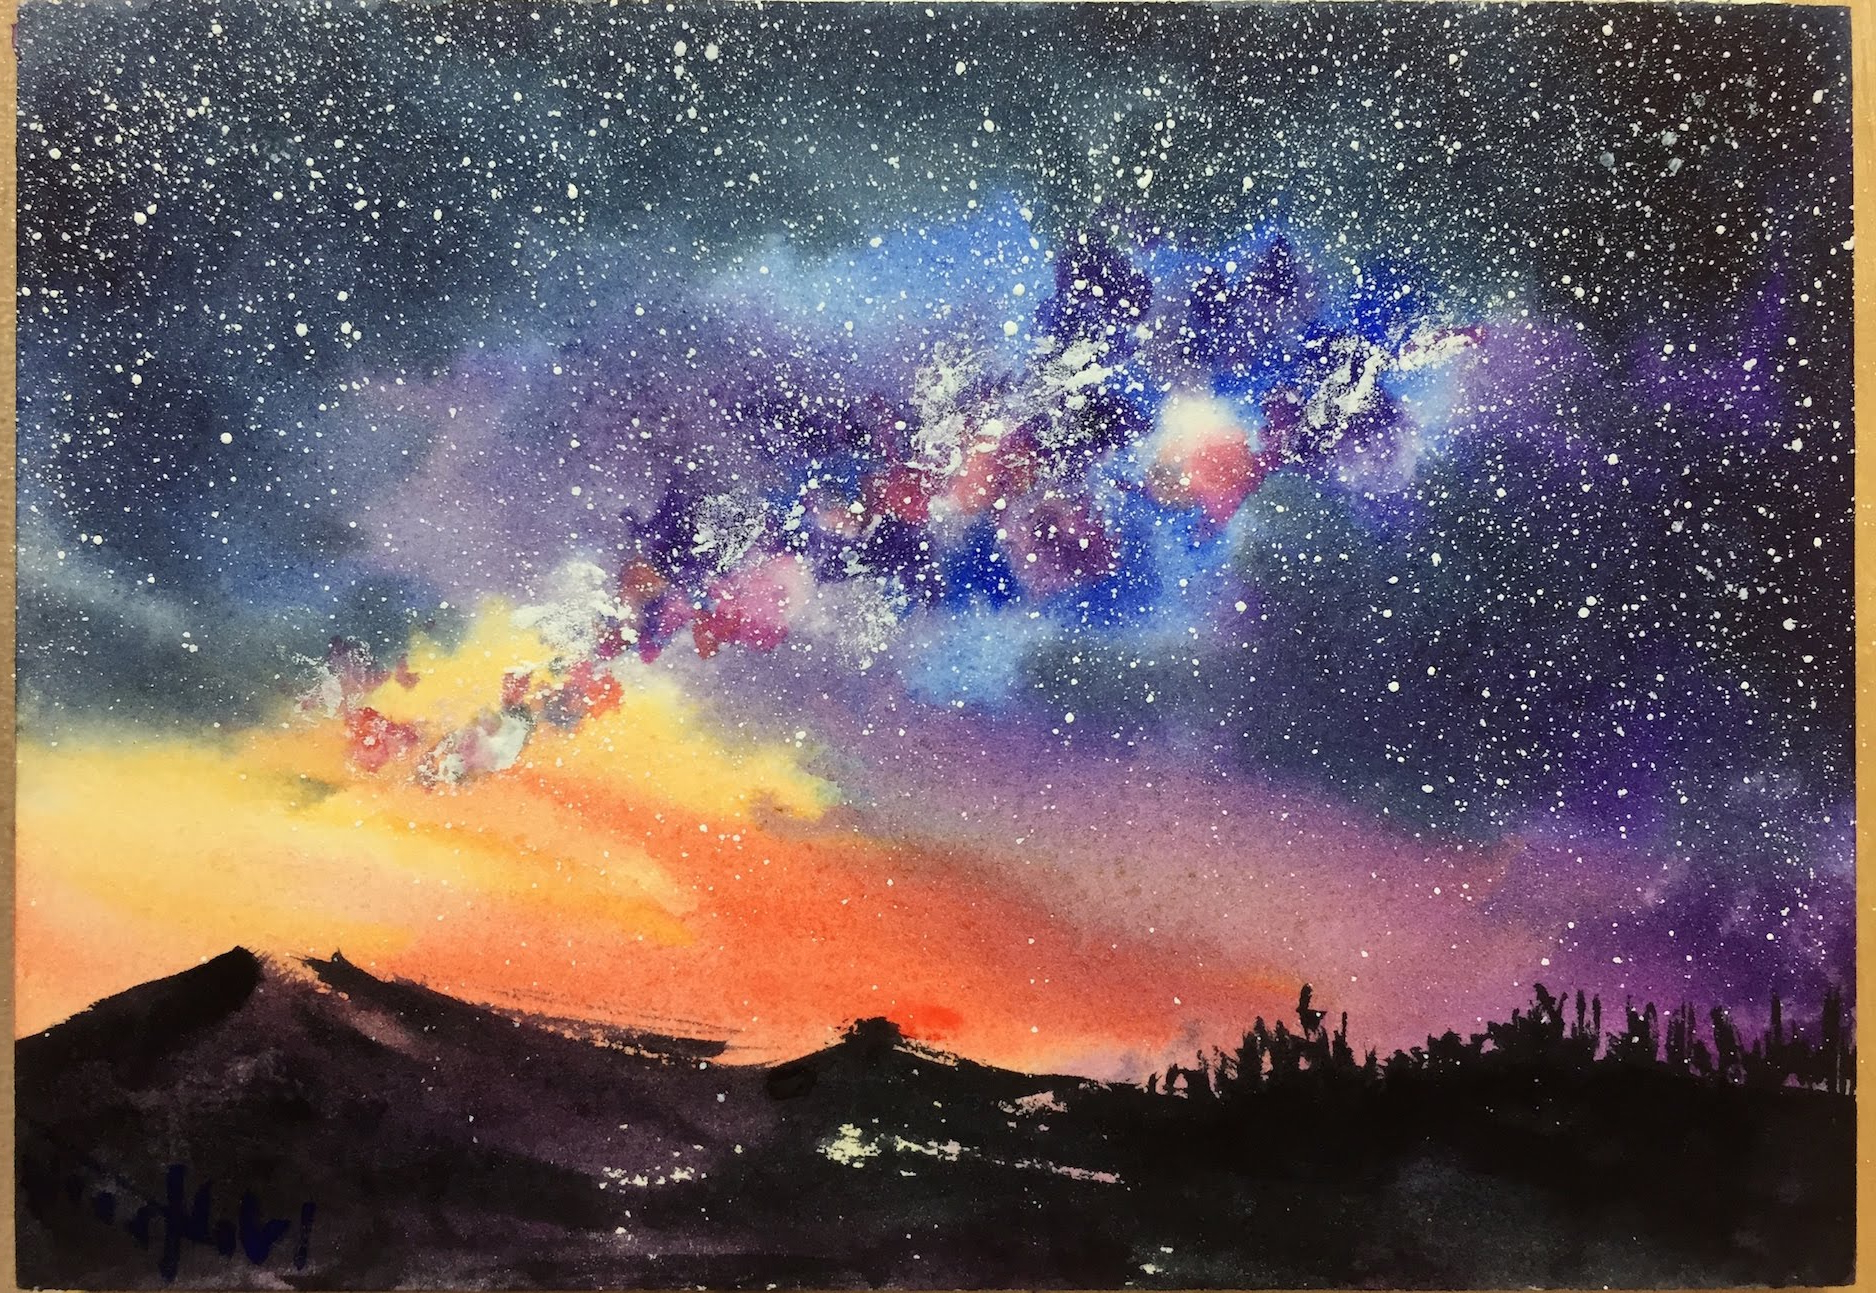 Painting Skies In Watercolor Watercolor Starry Night Sky - Starry Sky Water...